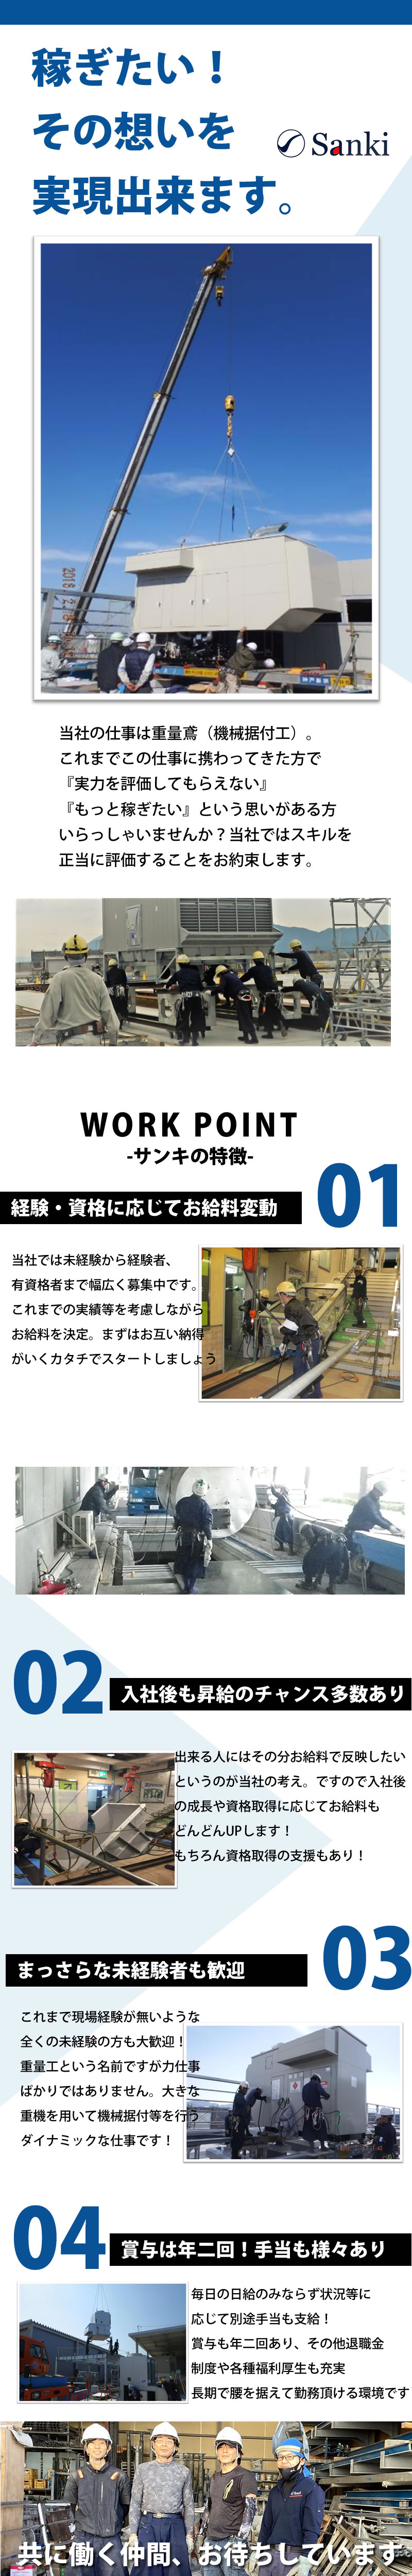 【重量鳶(機械据付工) 求人募集】-大阪市港区-　創業から40年以上!信頼と実績があるからこその安定があります!